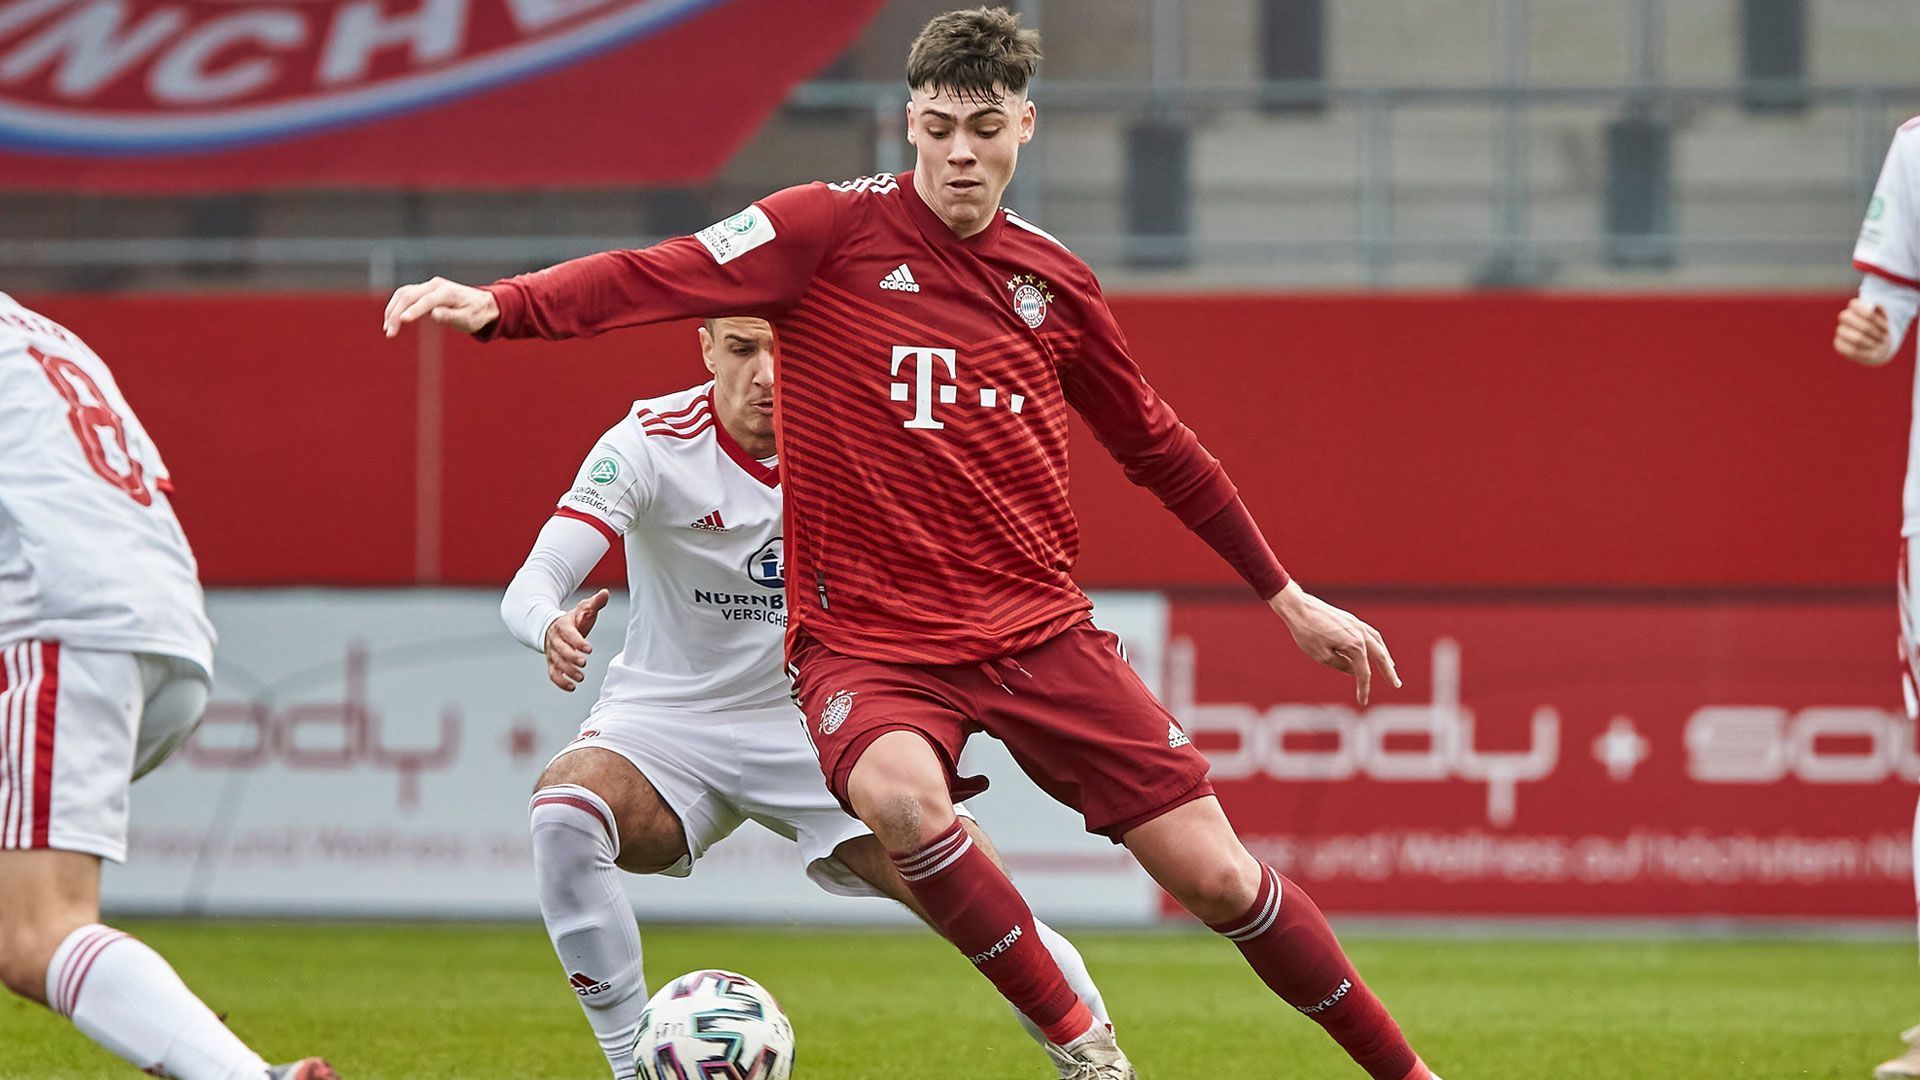 
                <strong>Marcel Wenig (Eintracht Frankfurt)</strong><br>
                Das 17-jährige Mittelfeldtalent Marcel Wenig wechselt im Sommer ablösefrei von der U19 des FC Bayern München zu Eintracht Frankfurt. Am Main unterschrieb Wenig für drei Jahre bis 2025. 
              